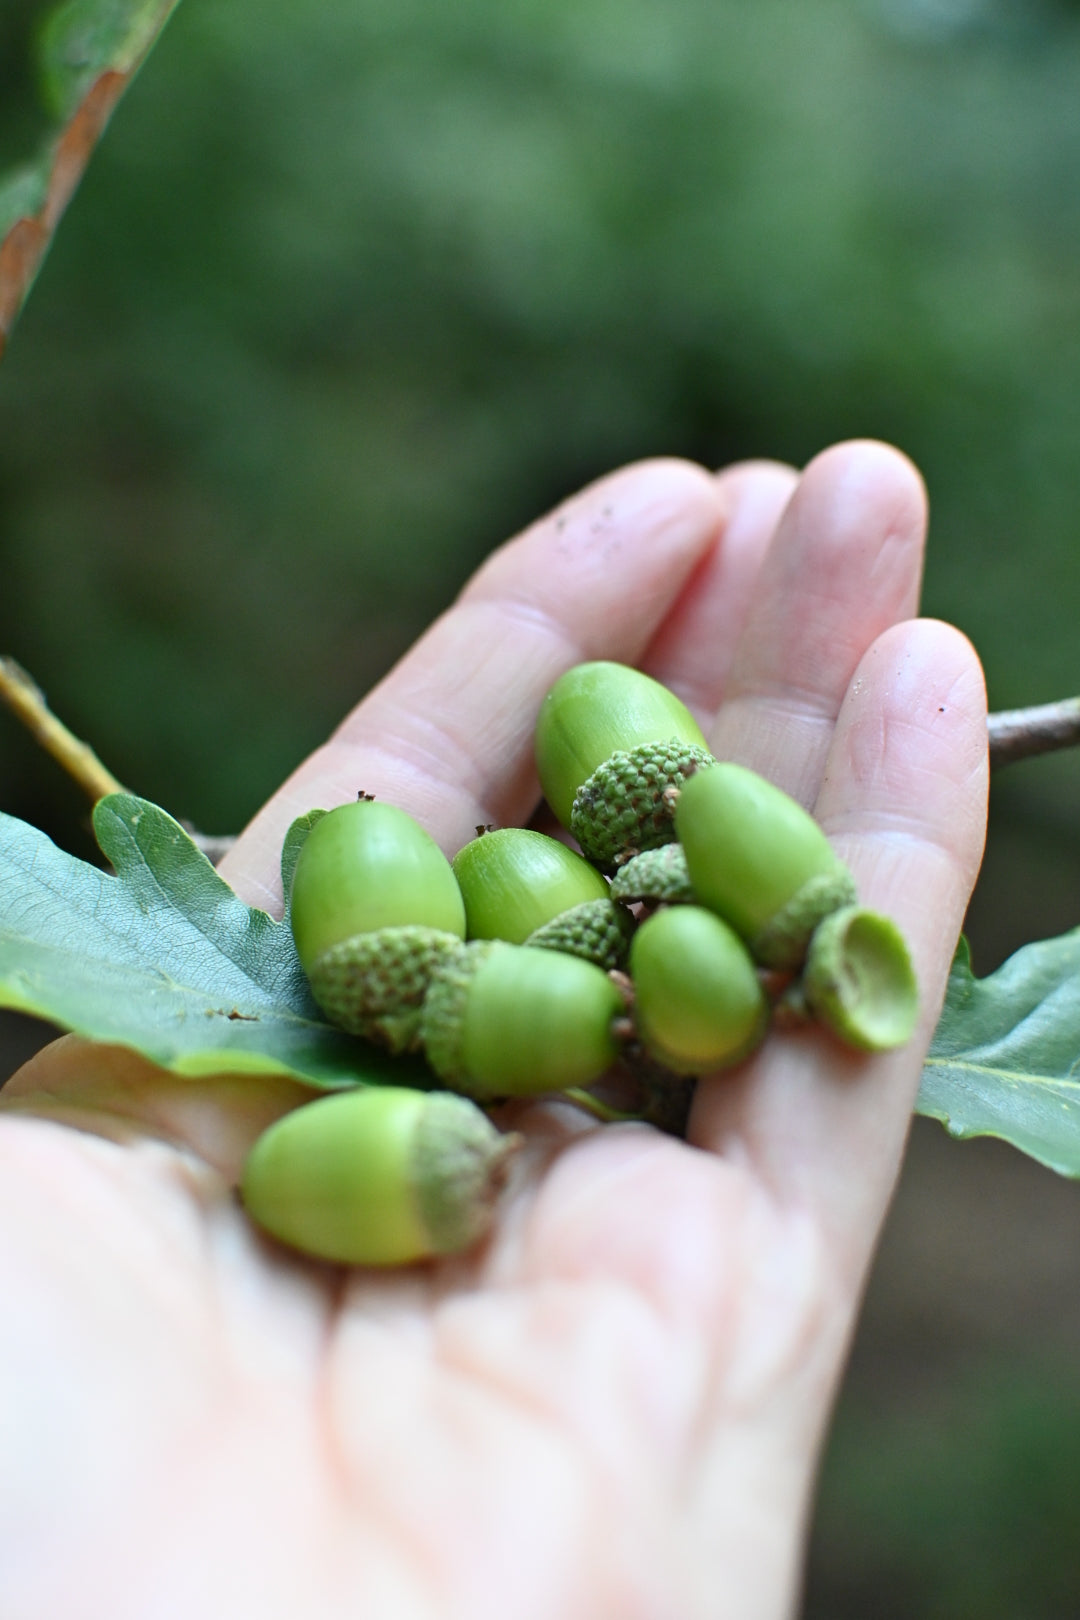 a handful of acorns